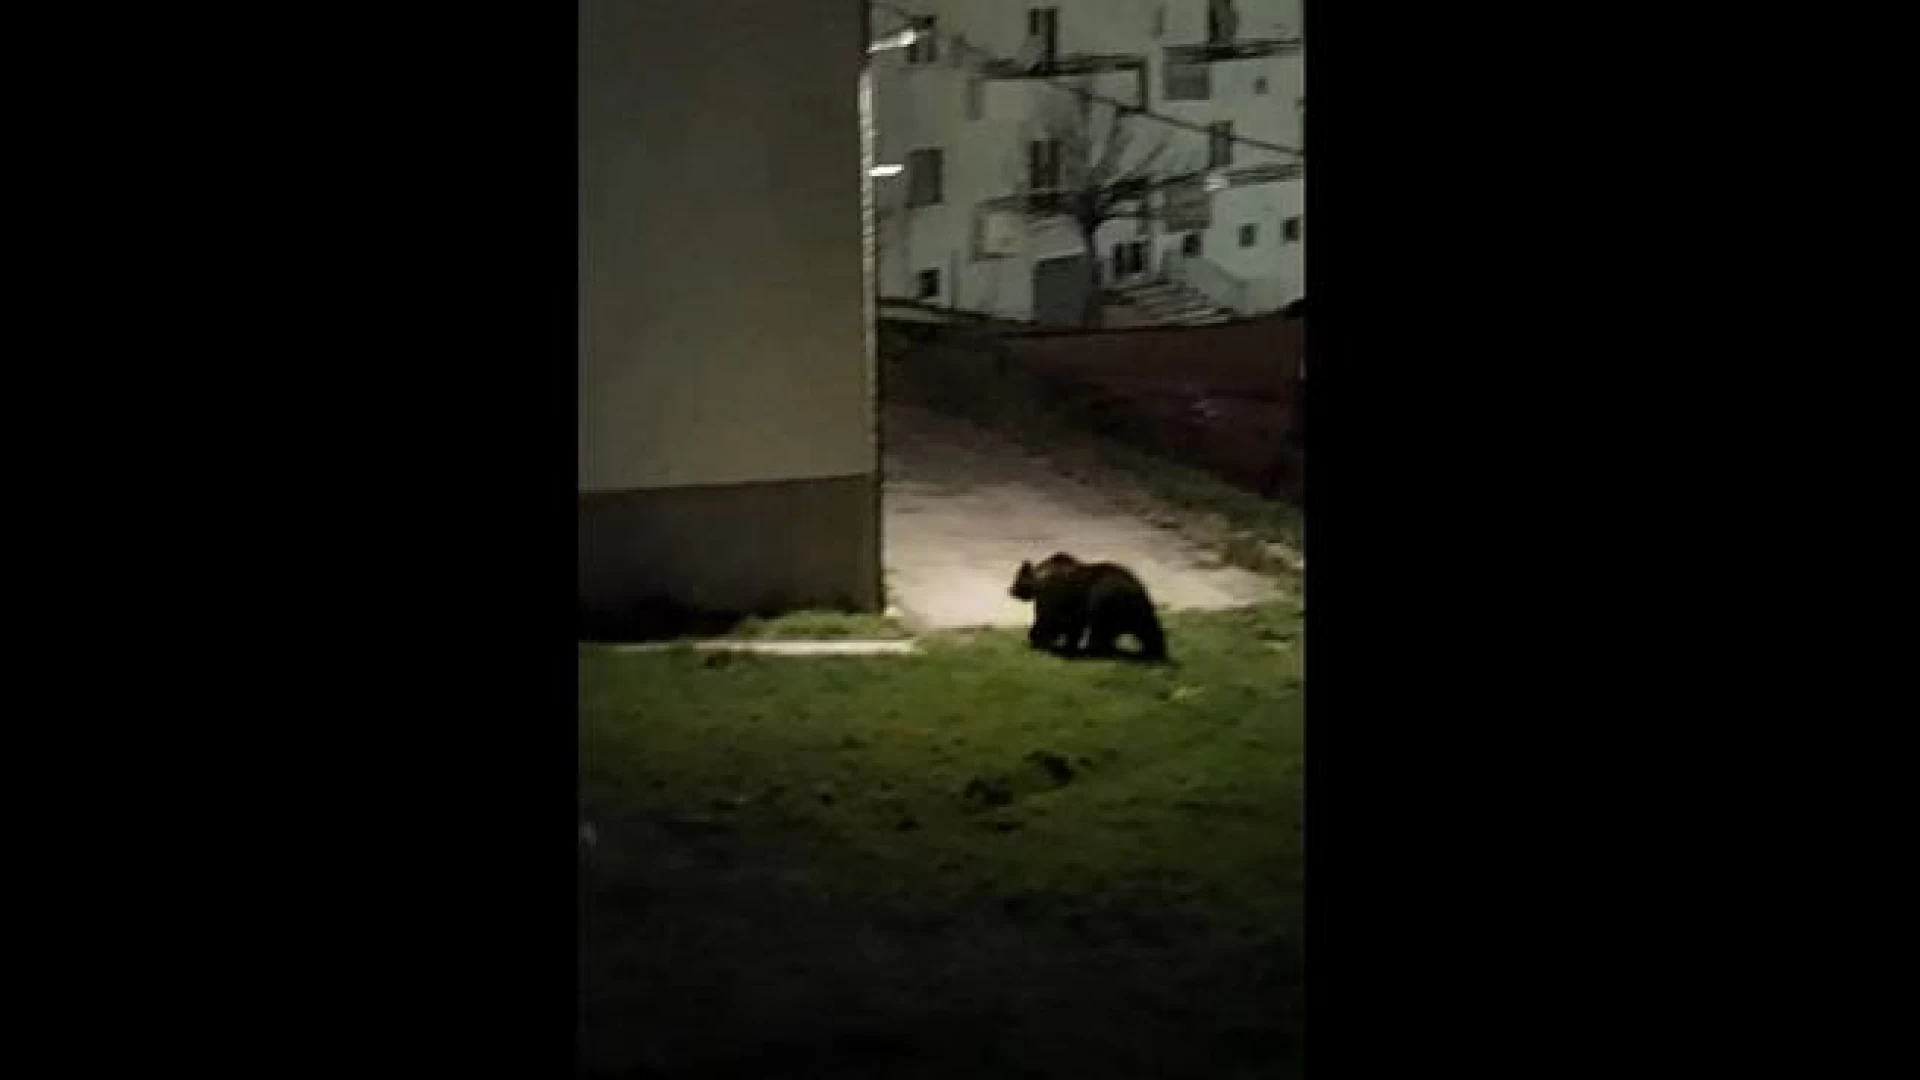 Pizzoferrato: Juan Carrito e' tornato. L'orso avvistato questa sera in paese. Veloce passeggiata nel centro abitato abruzzese